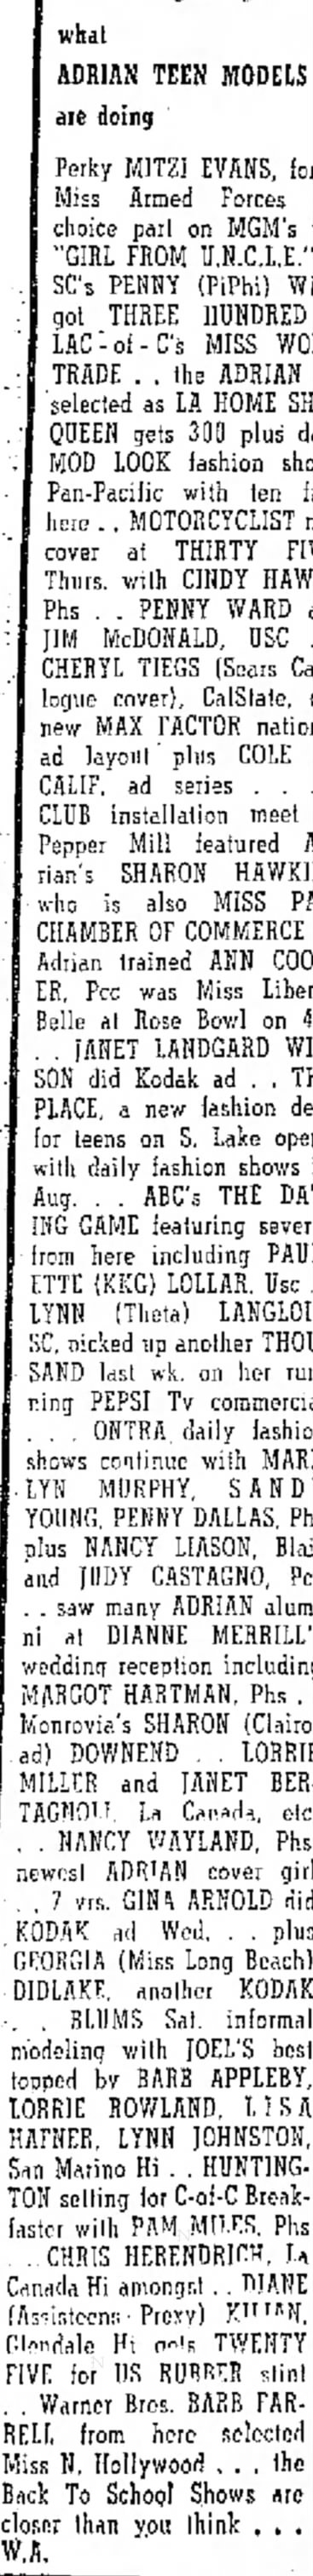 July 10 1966